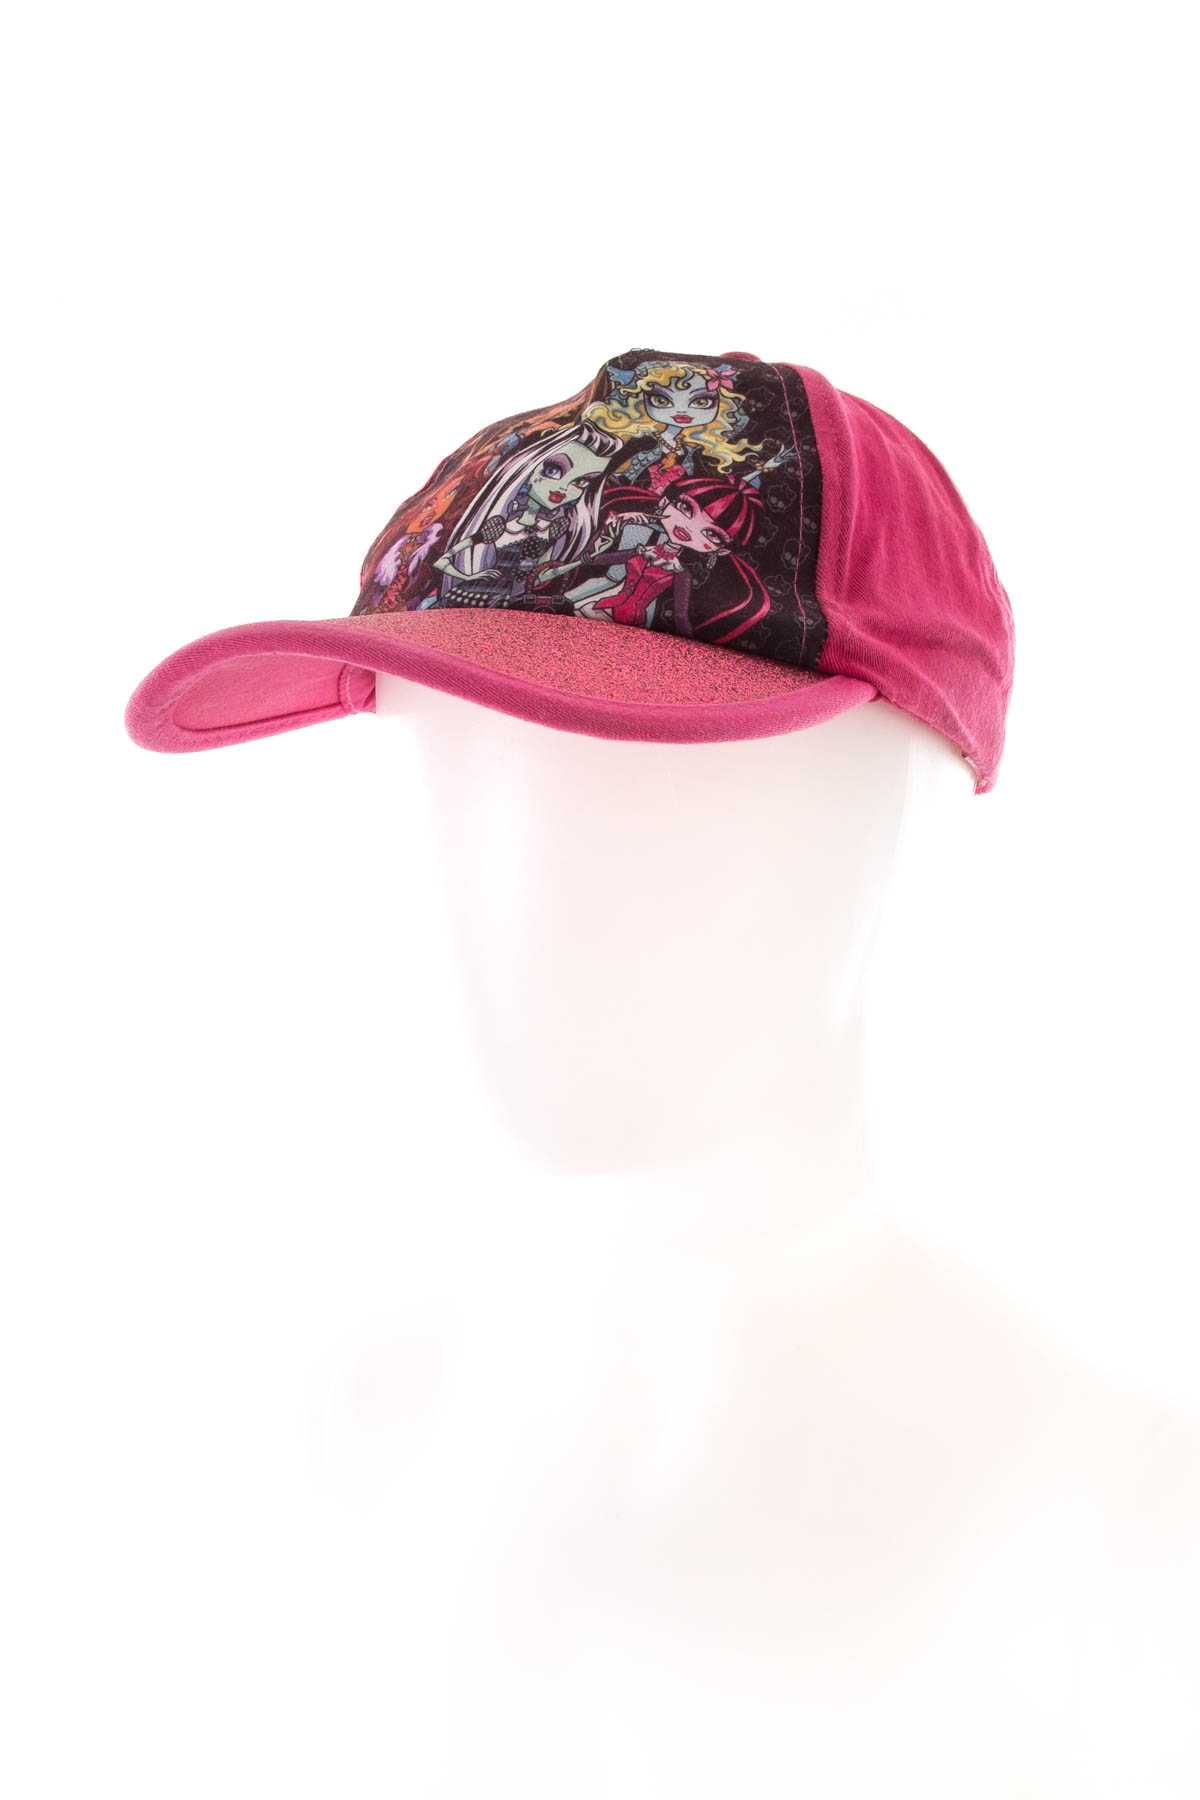 Girl's hat - Monster High - 0